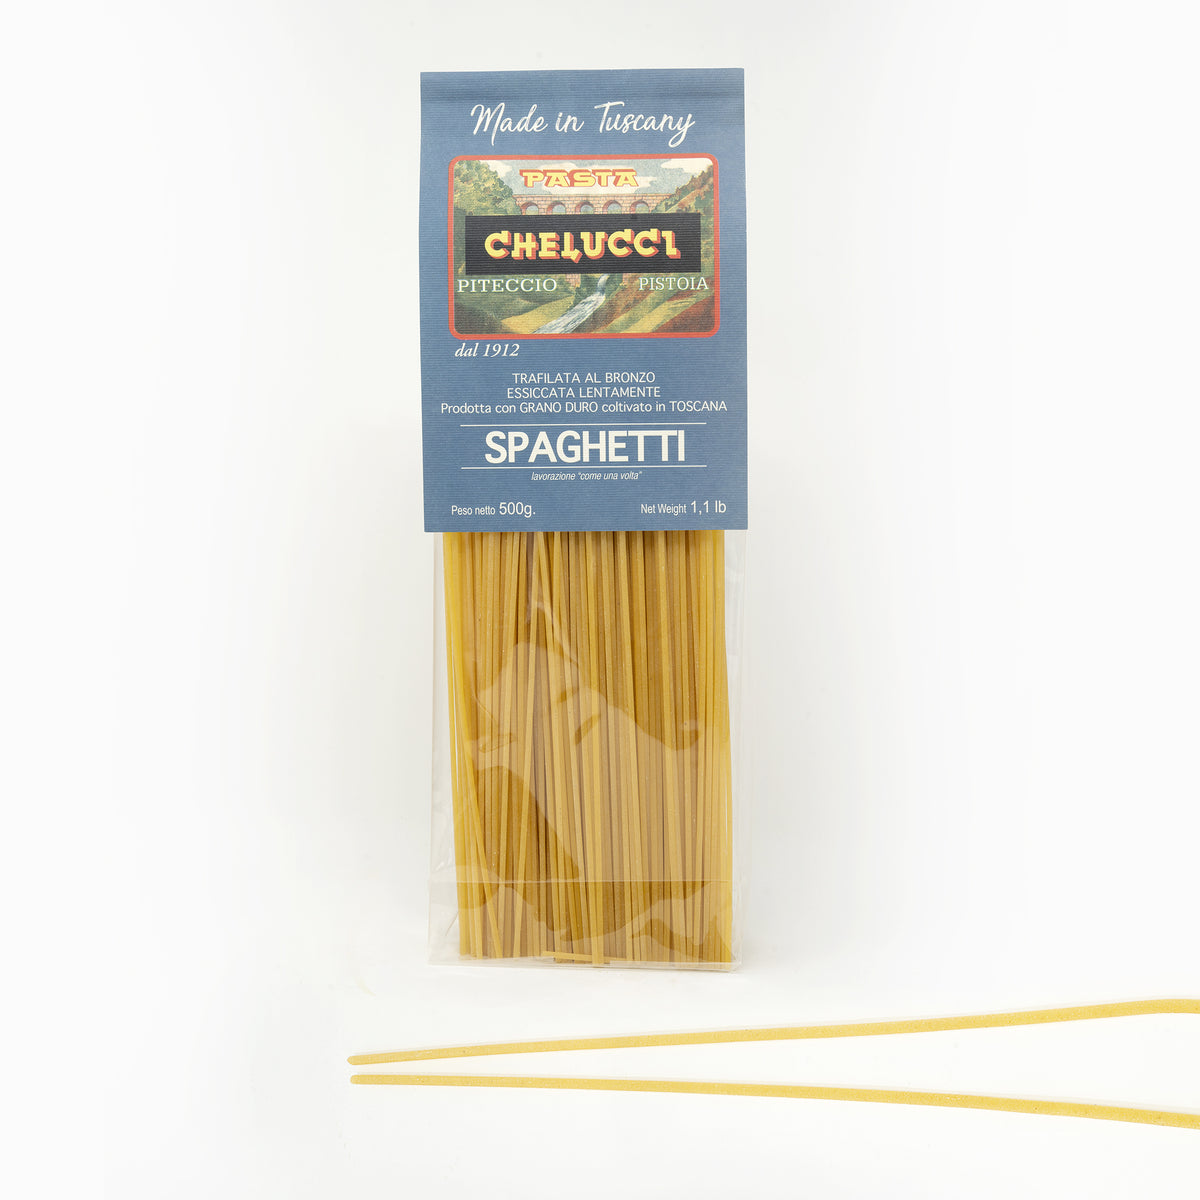 Spaghetti | Semola di Grano Duro | Pasta Chelucci